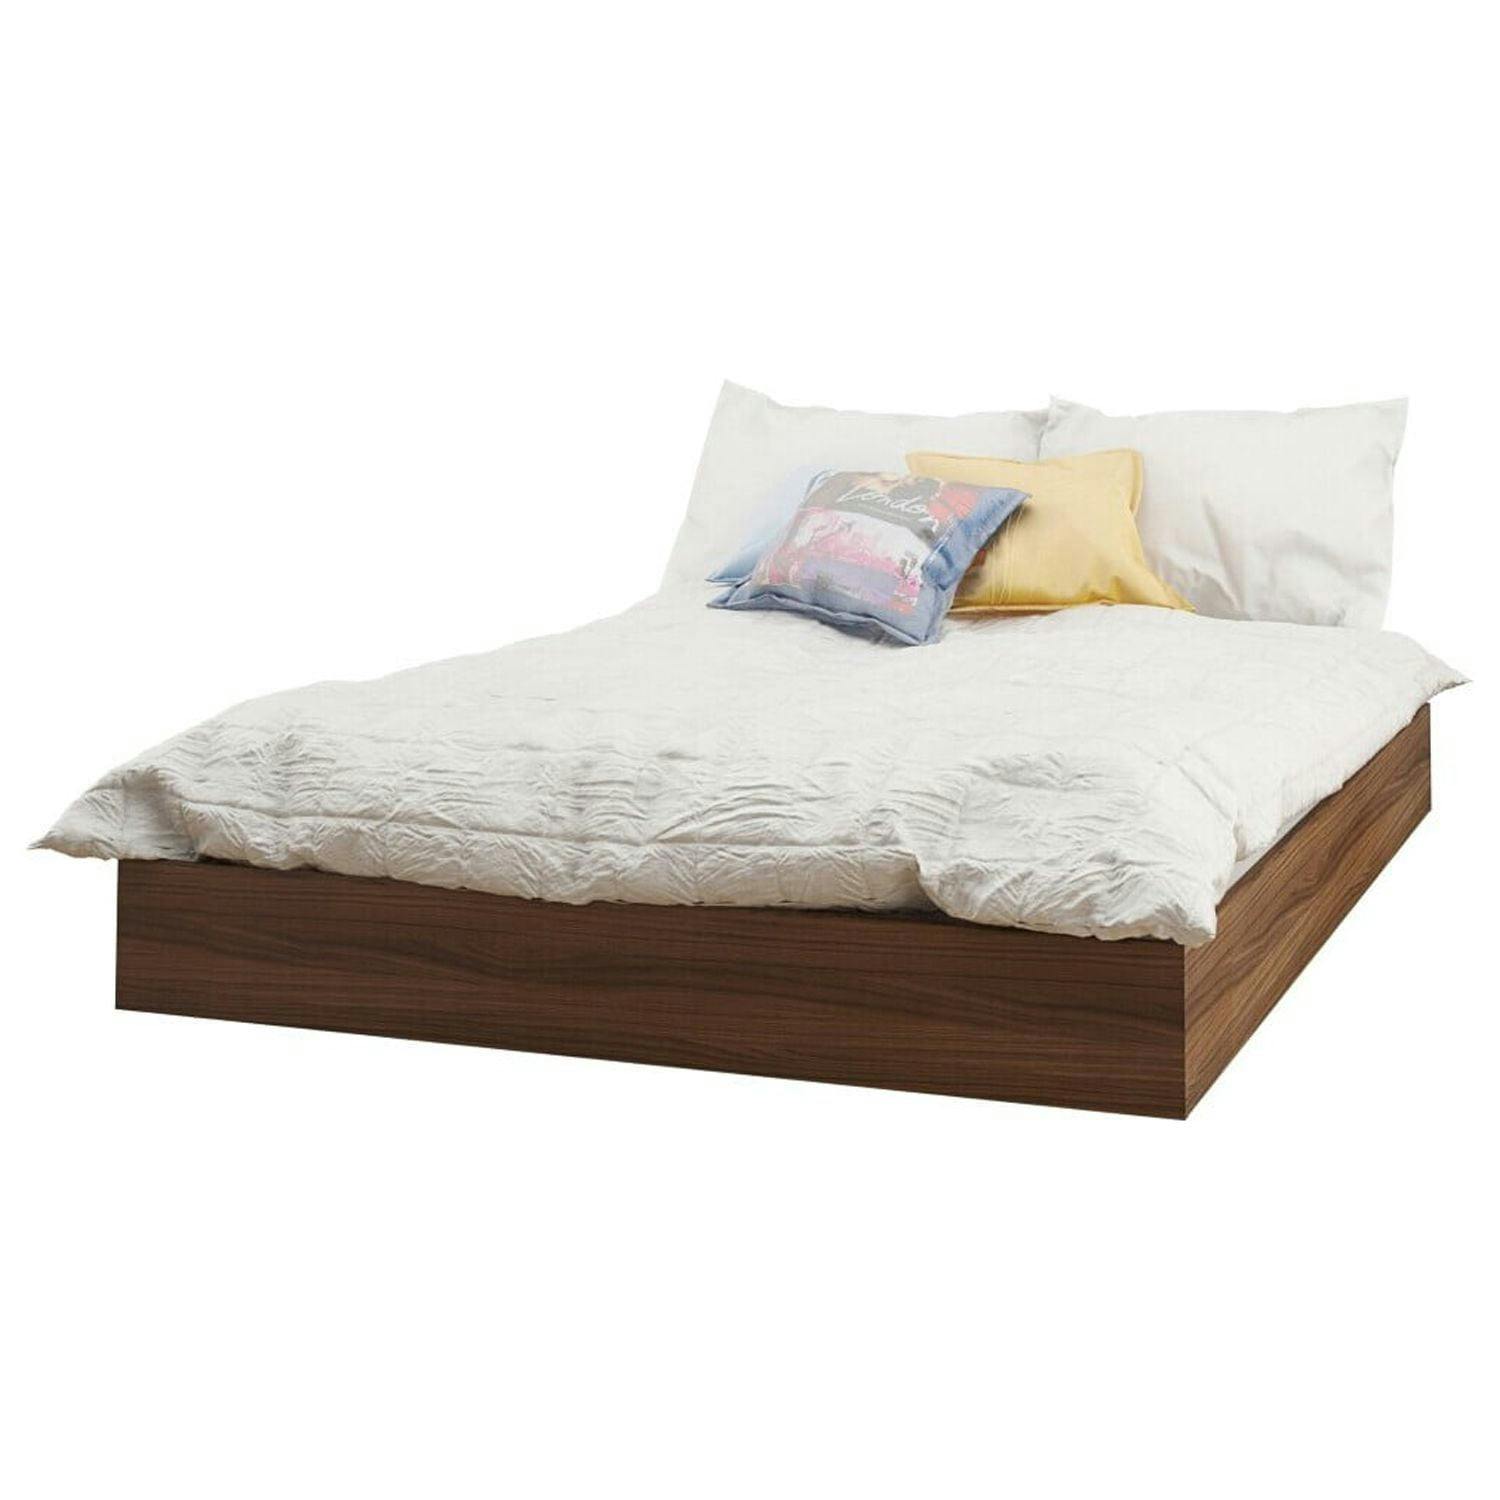 AeroFloat Full/Double Walnut Laminate Upholstered Platform Bed